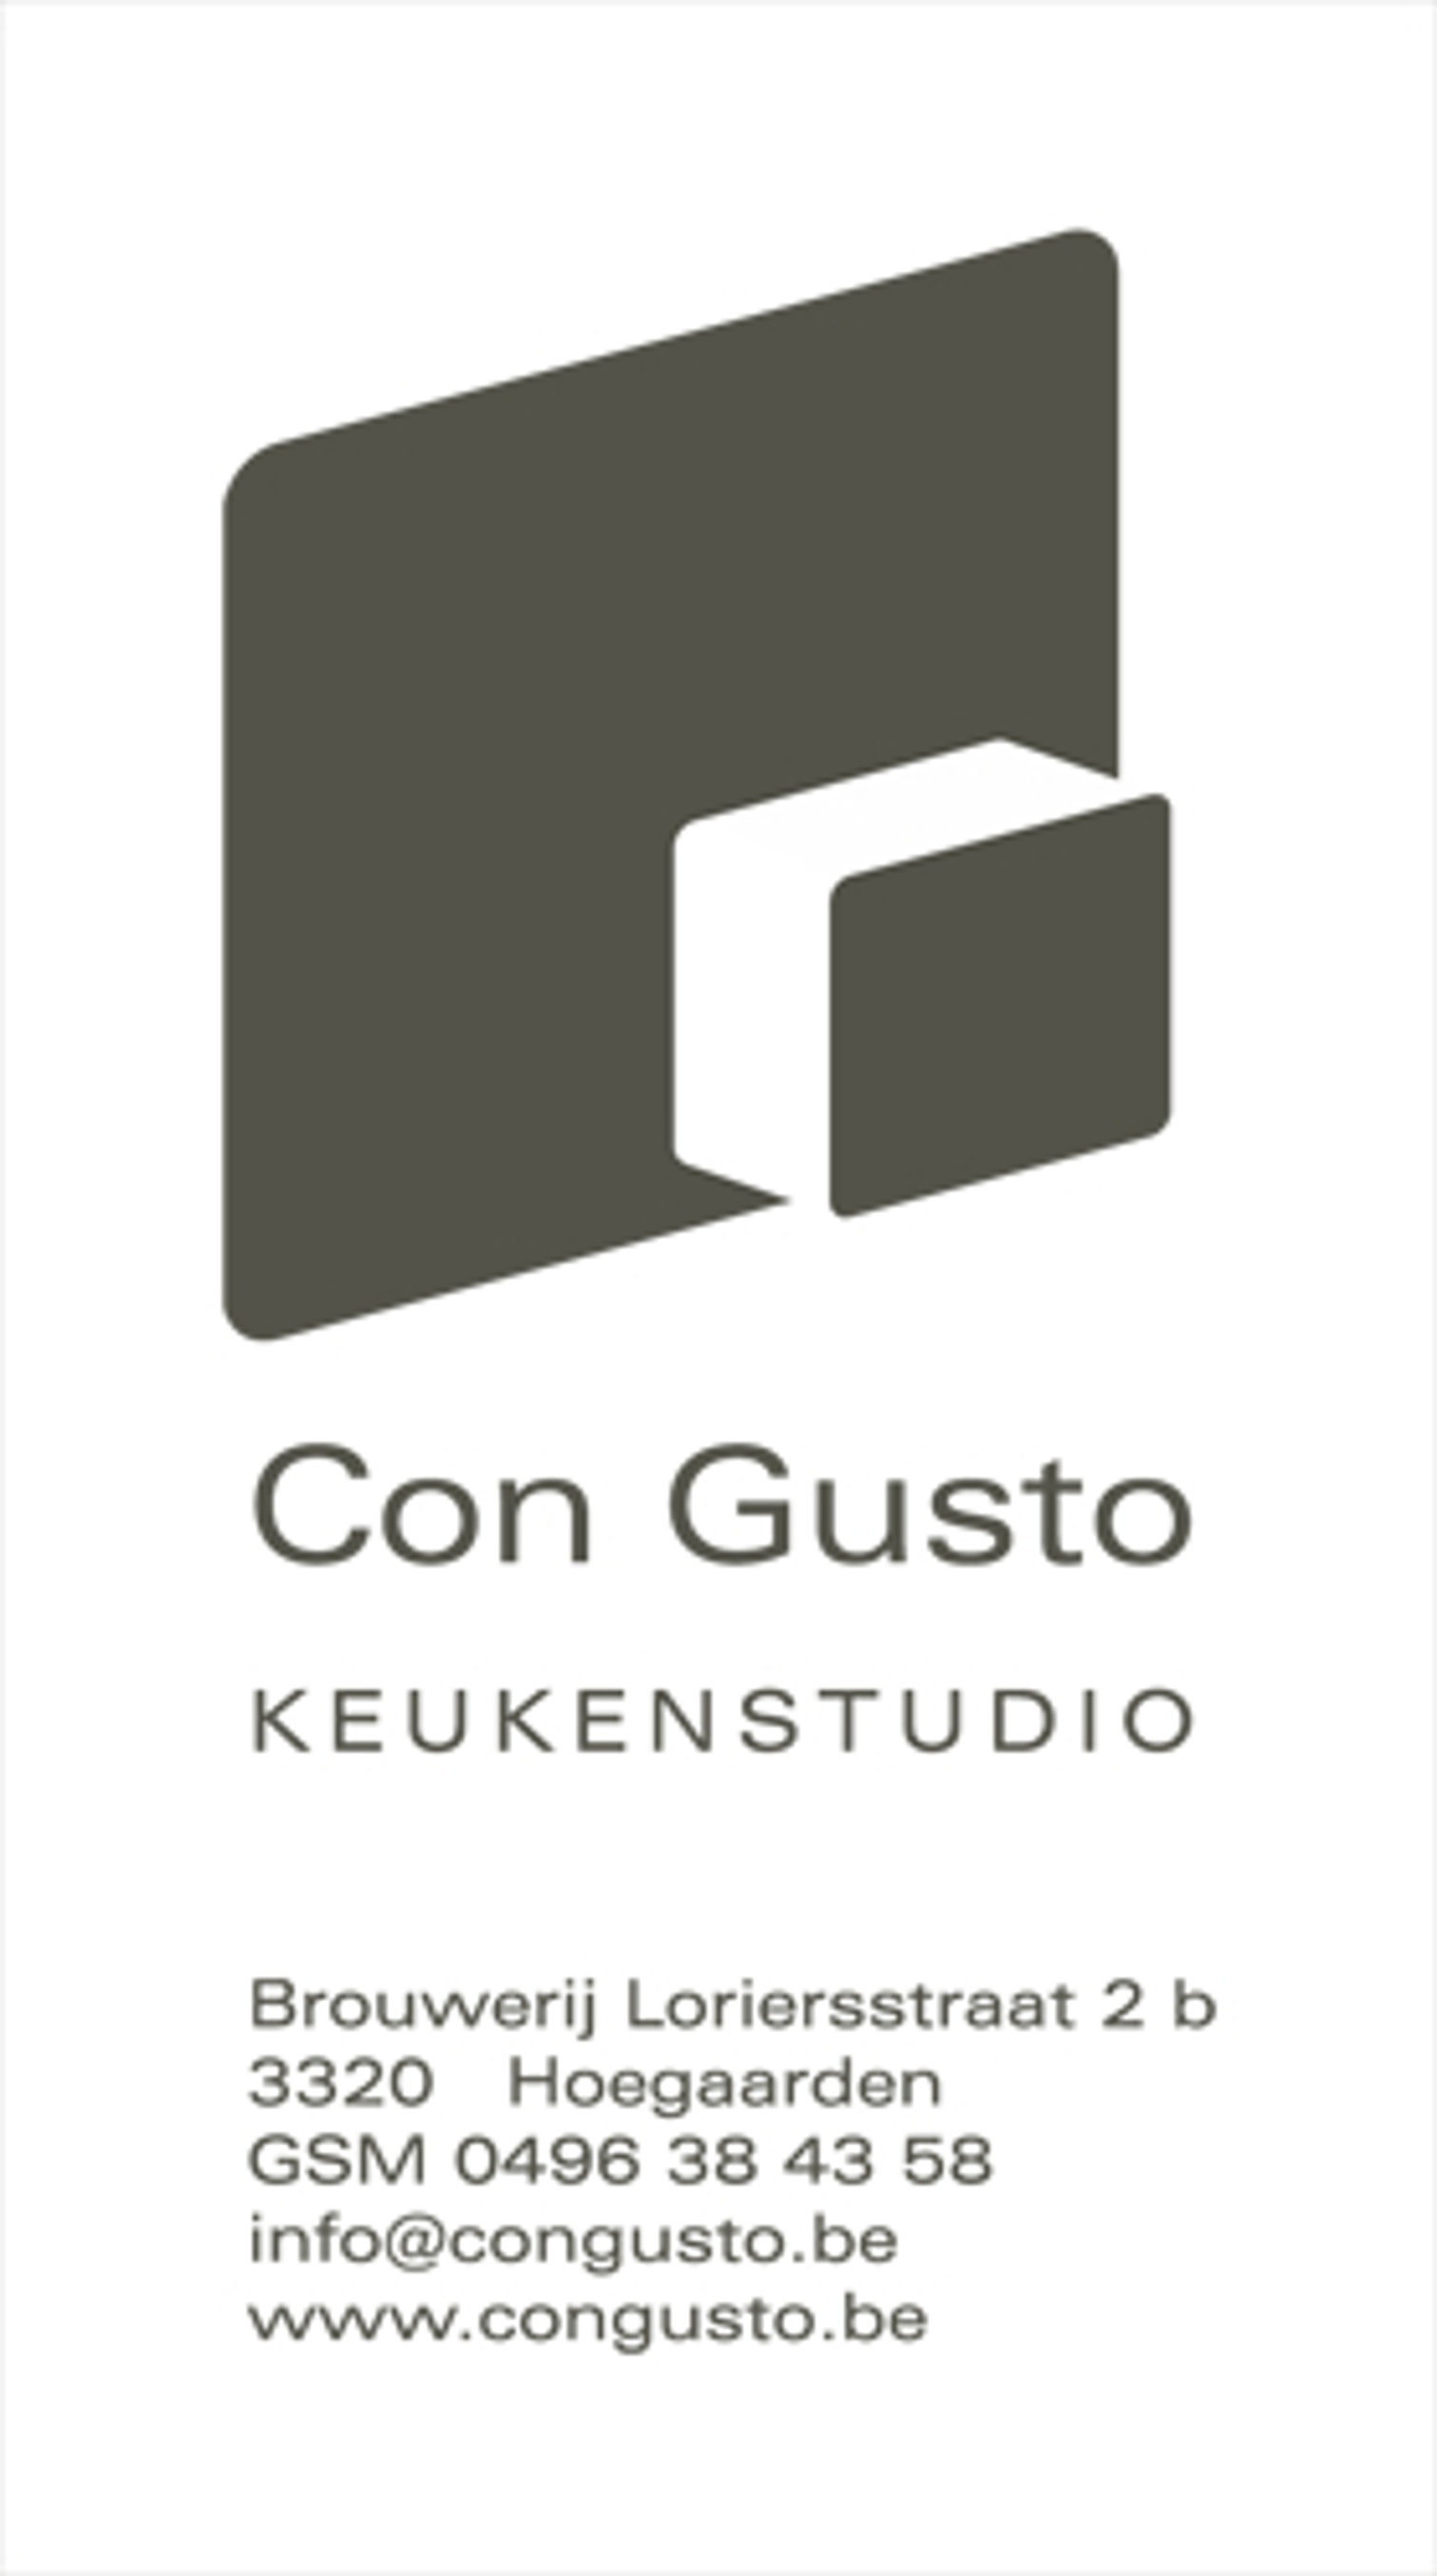 keukenstudio Con Gusto logo